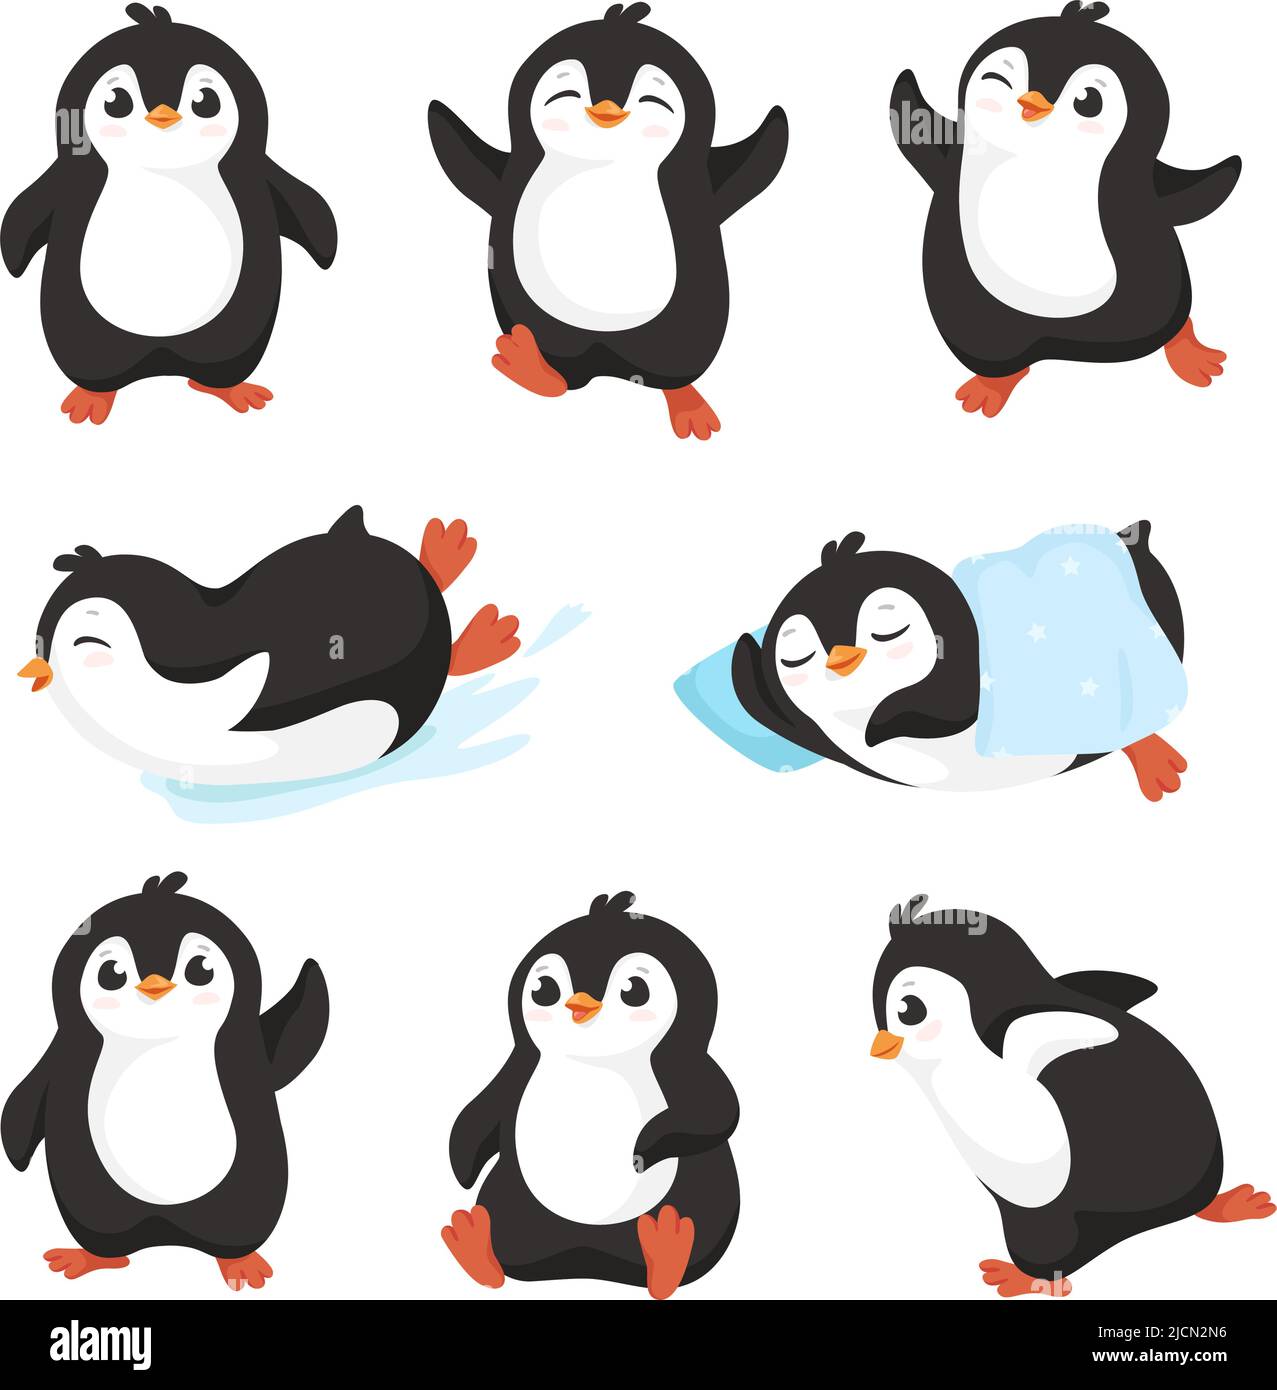 Cute cartoon penguin pictures